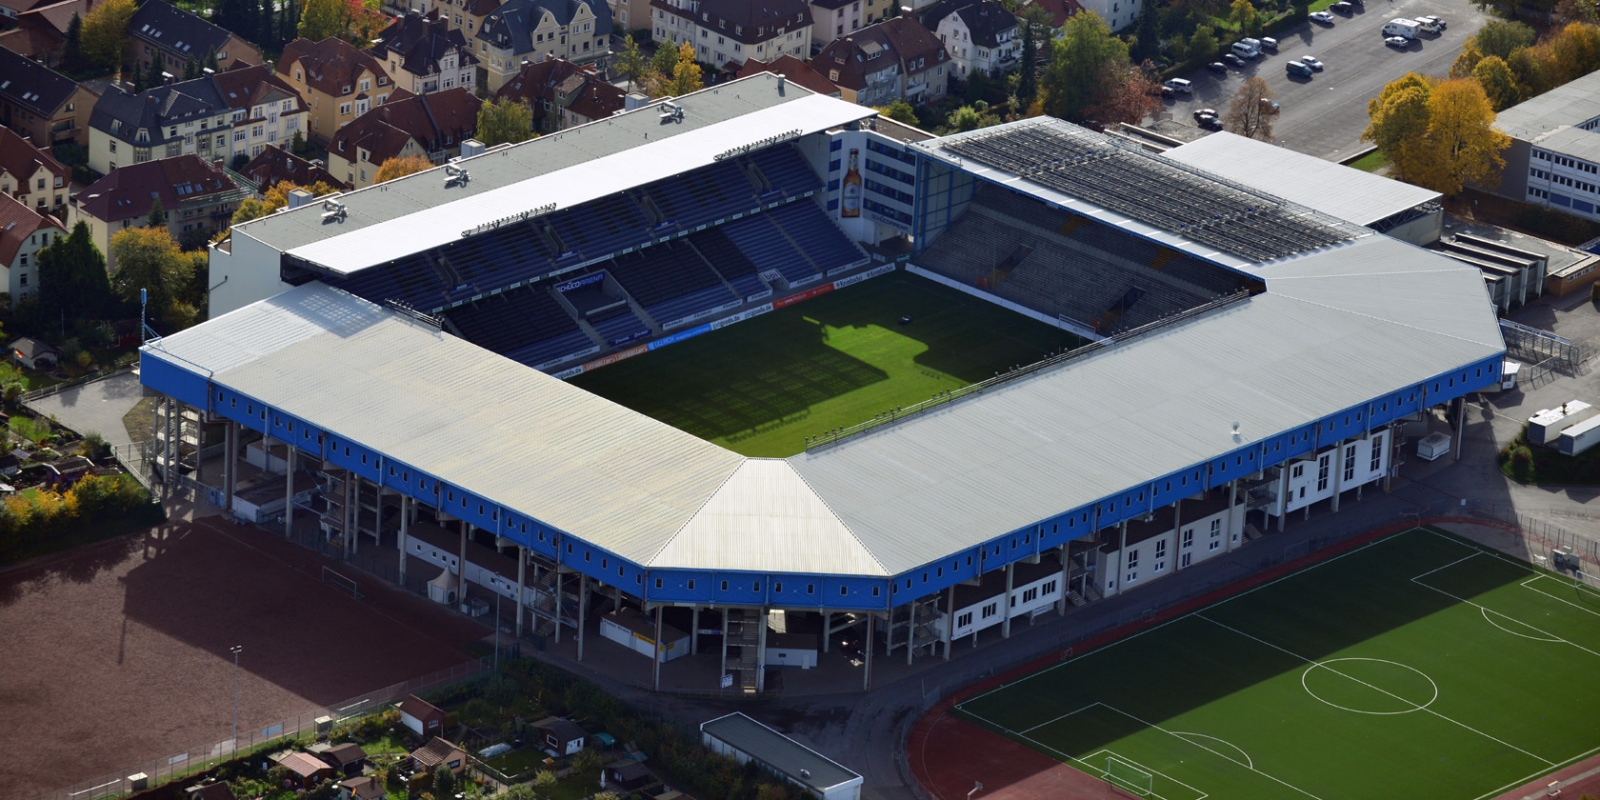 Stadion Bielefeld aus der Vogelperspektive